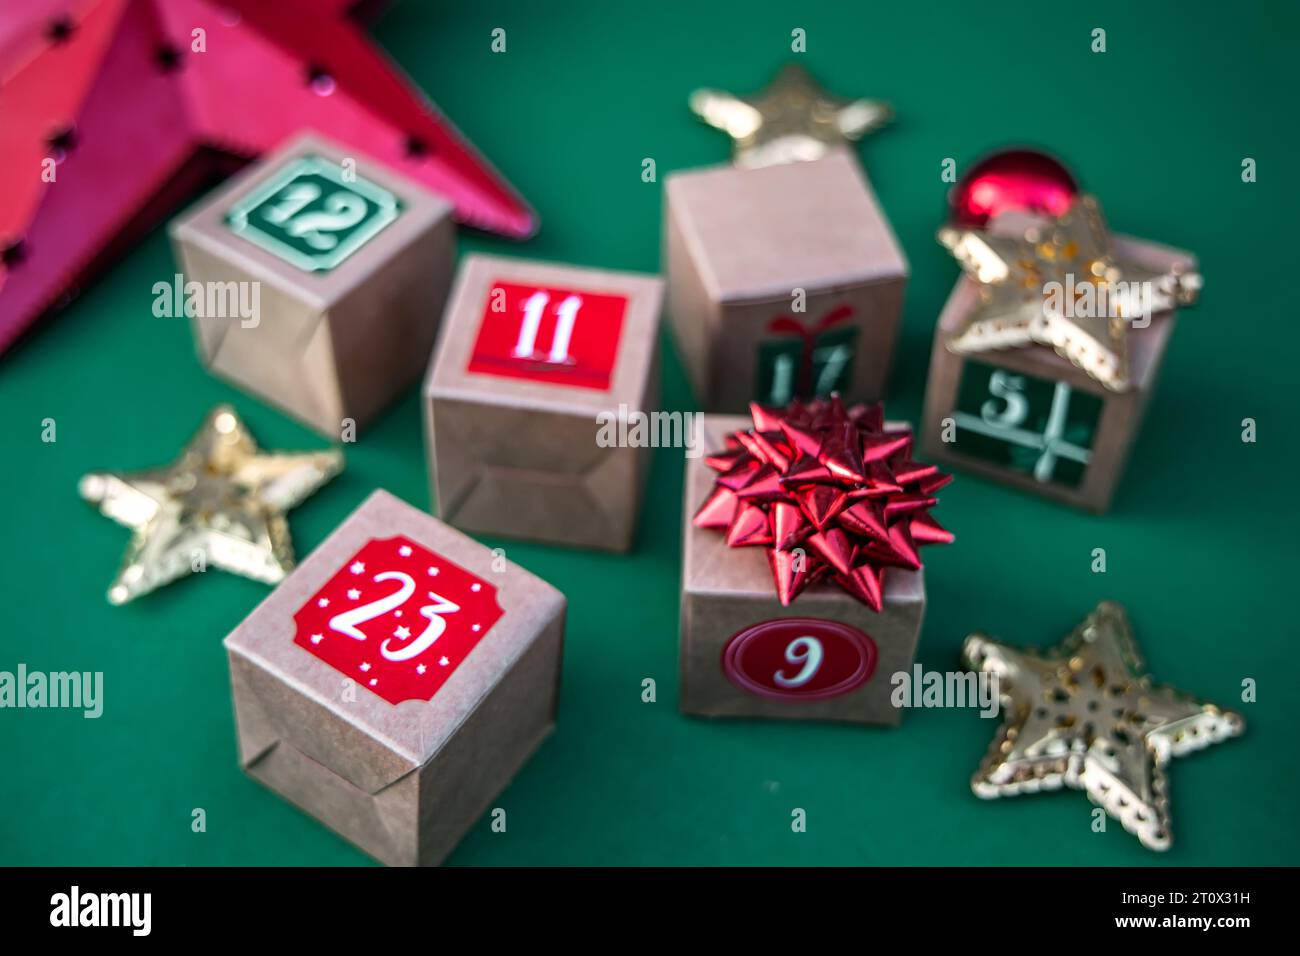 Calendrier de l'Avent artisanal : cubes de papier kraft avec des chiffres sur un fond vert vibrant. Adoptez la tradition des fêtes Banque D'Images